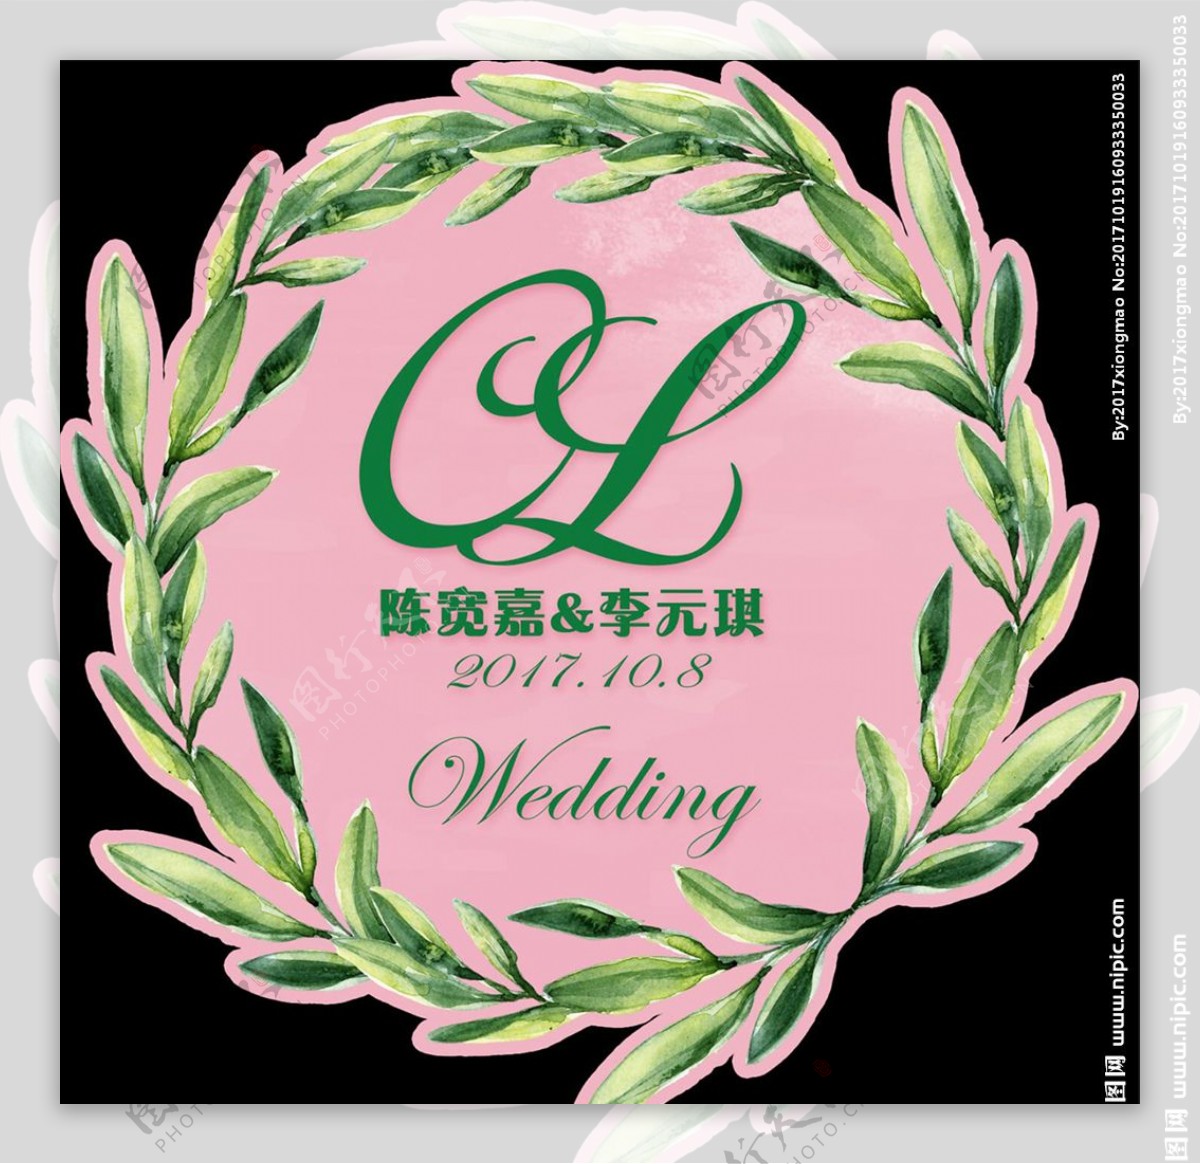 八清新婚礼logo